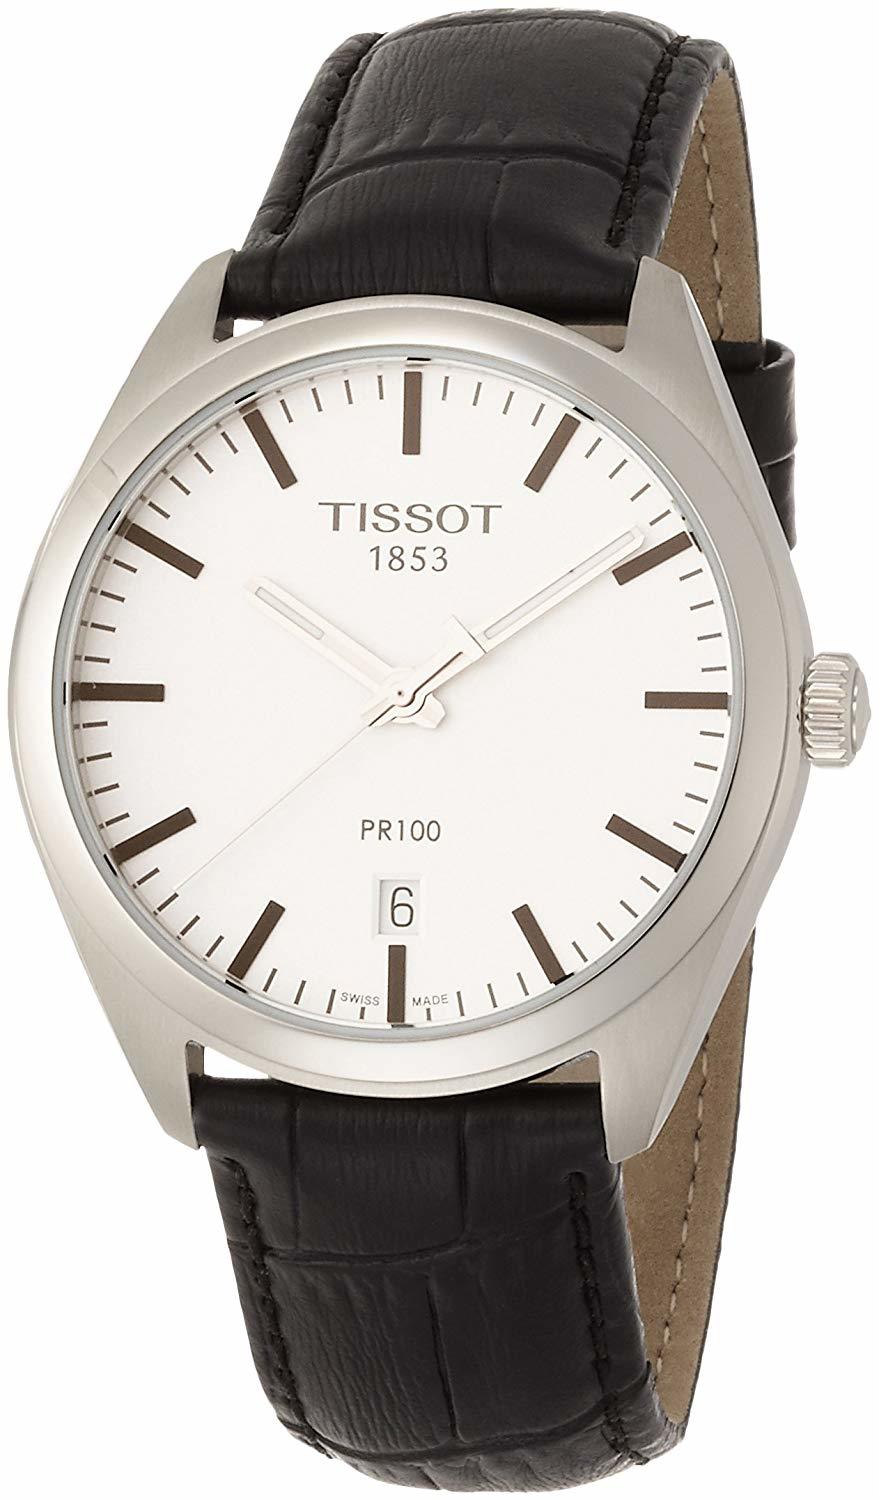 [ティソ] TISSOT 腕時計 PR100 0 クォーツ シルバー文字盤 レザー